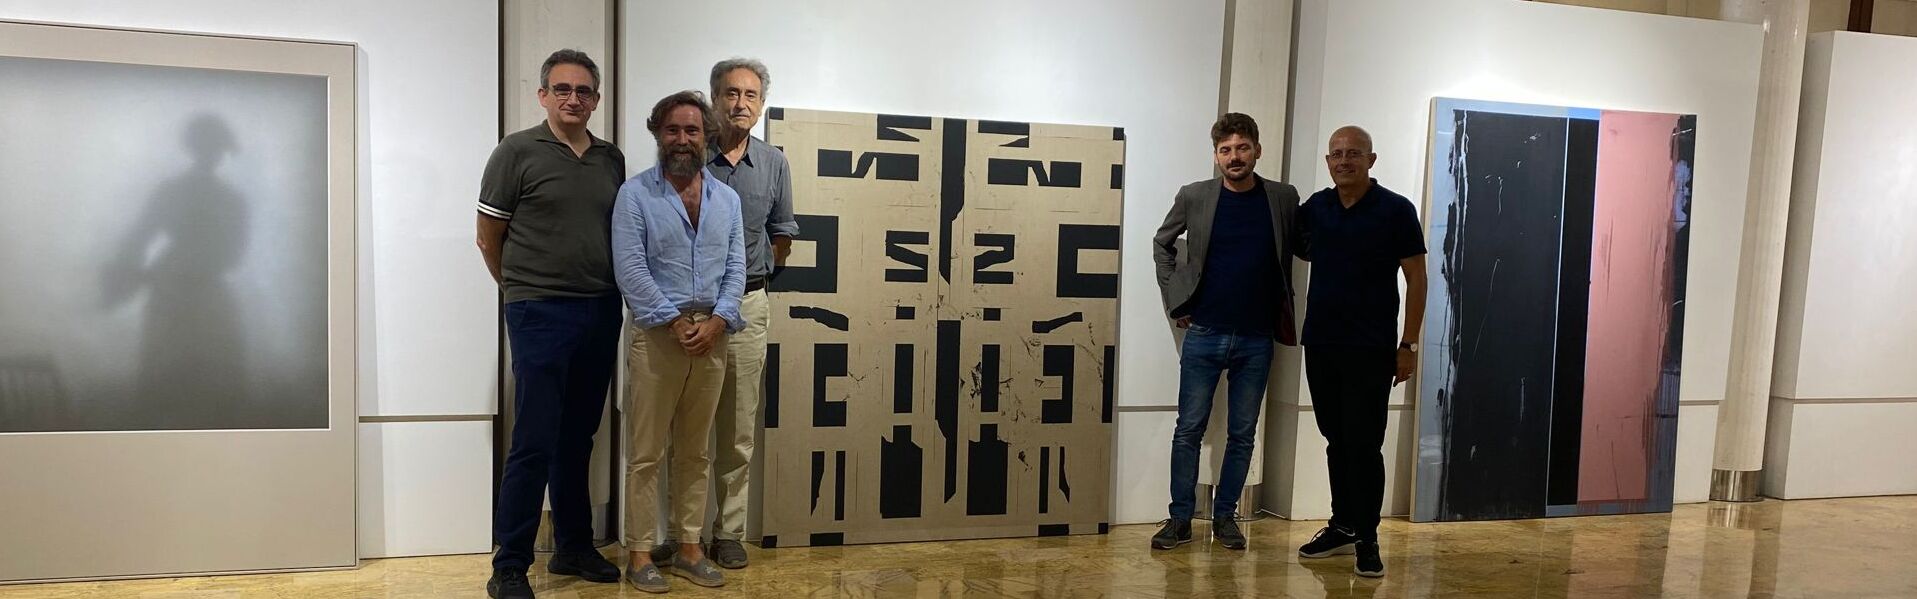 El murciano Juan Sánchez gana el XXIII Premio de Pintura de la Universidad de Murcia